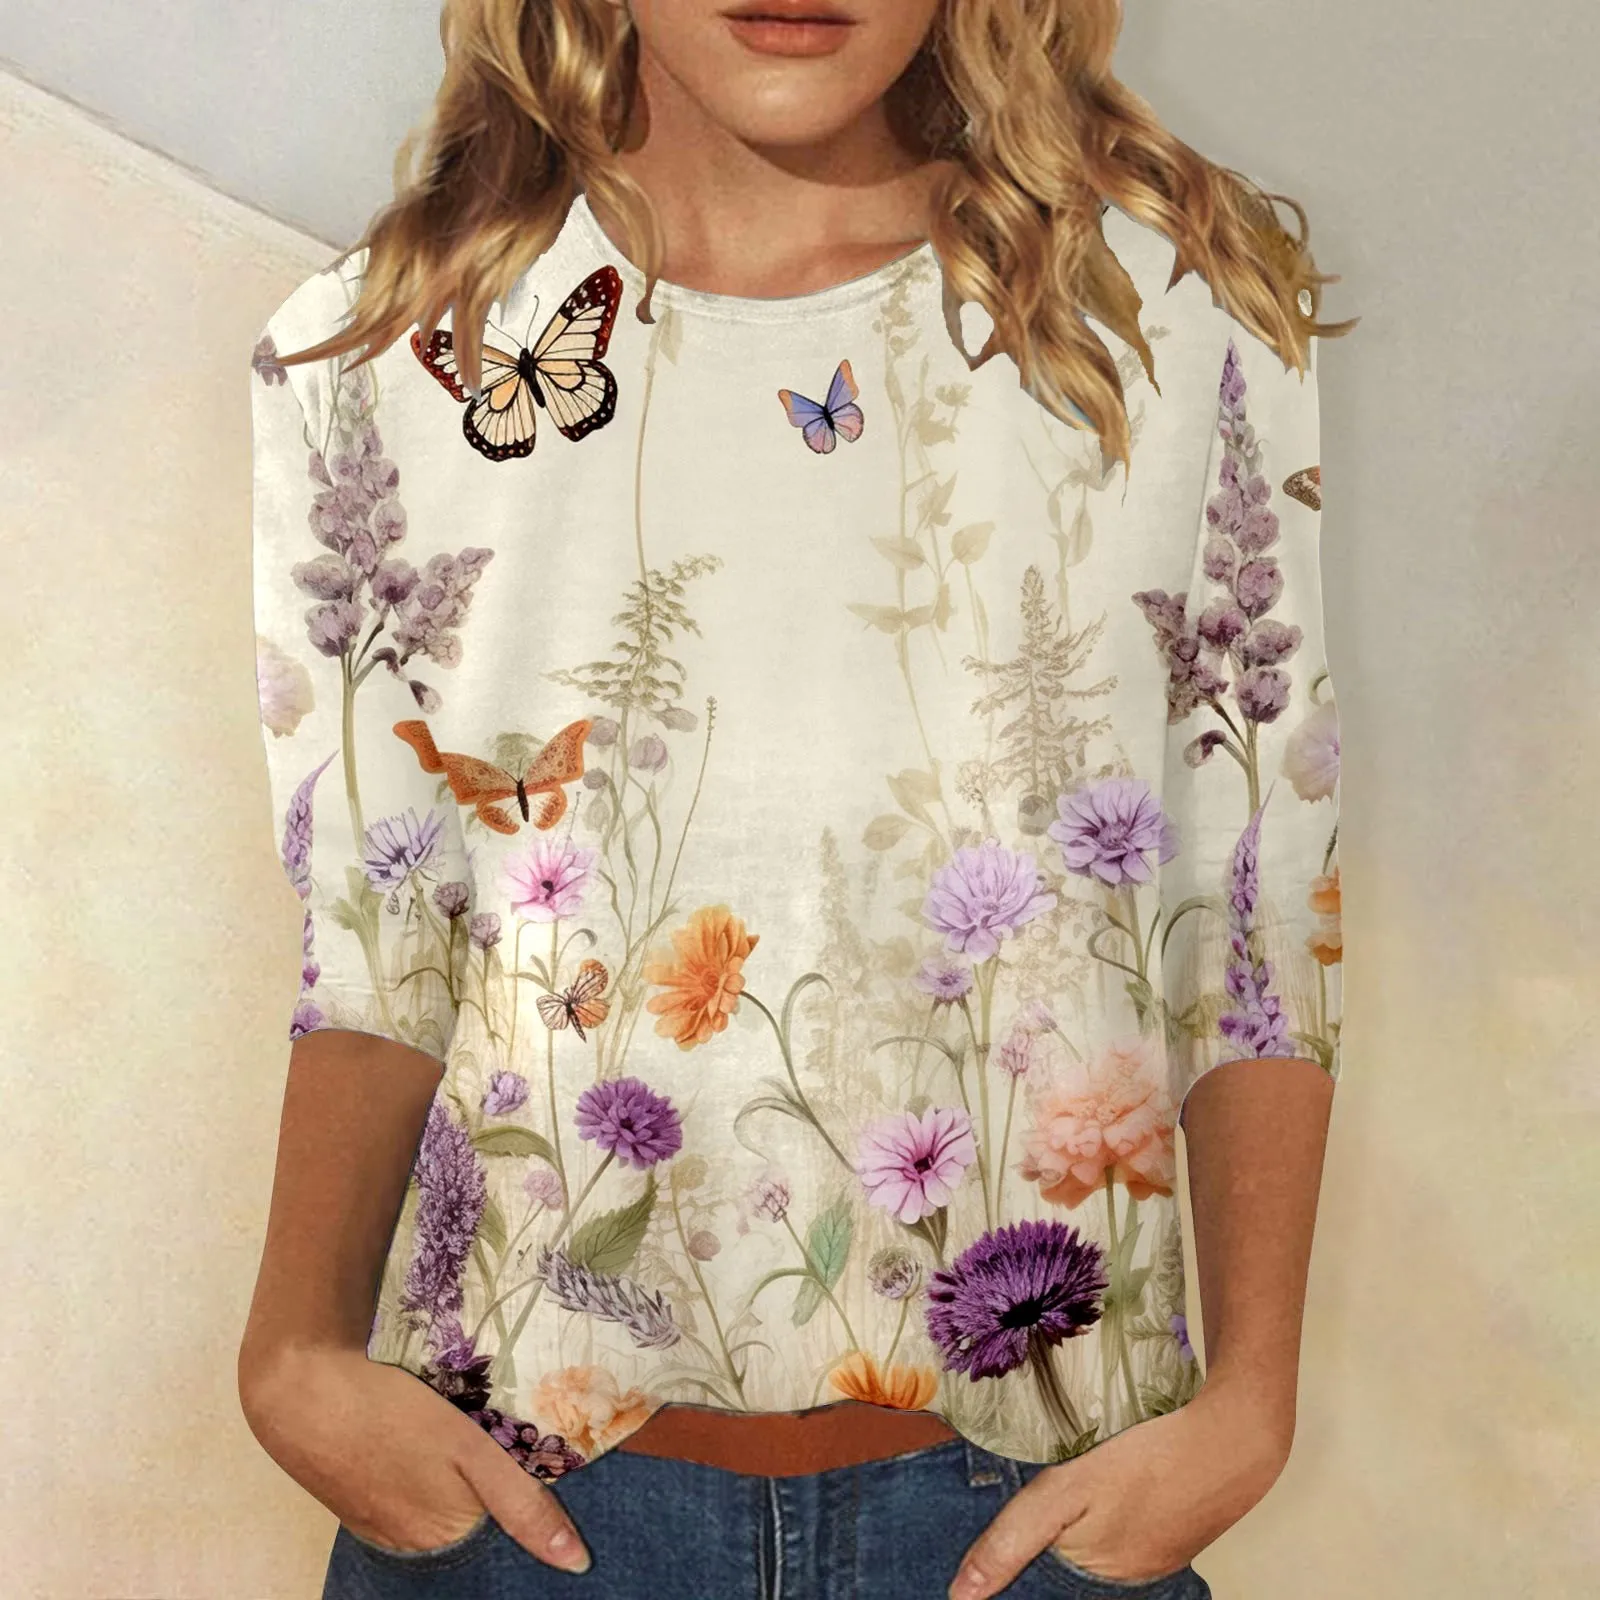 

Женская Винтажная футболка, футболка, свитшот с цветочным рисунком, Повседневная футболка на выходные, футболка с длинными рукавами и принтом, круглый вырез, базовая уличная одежда